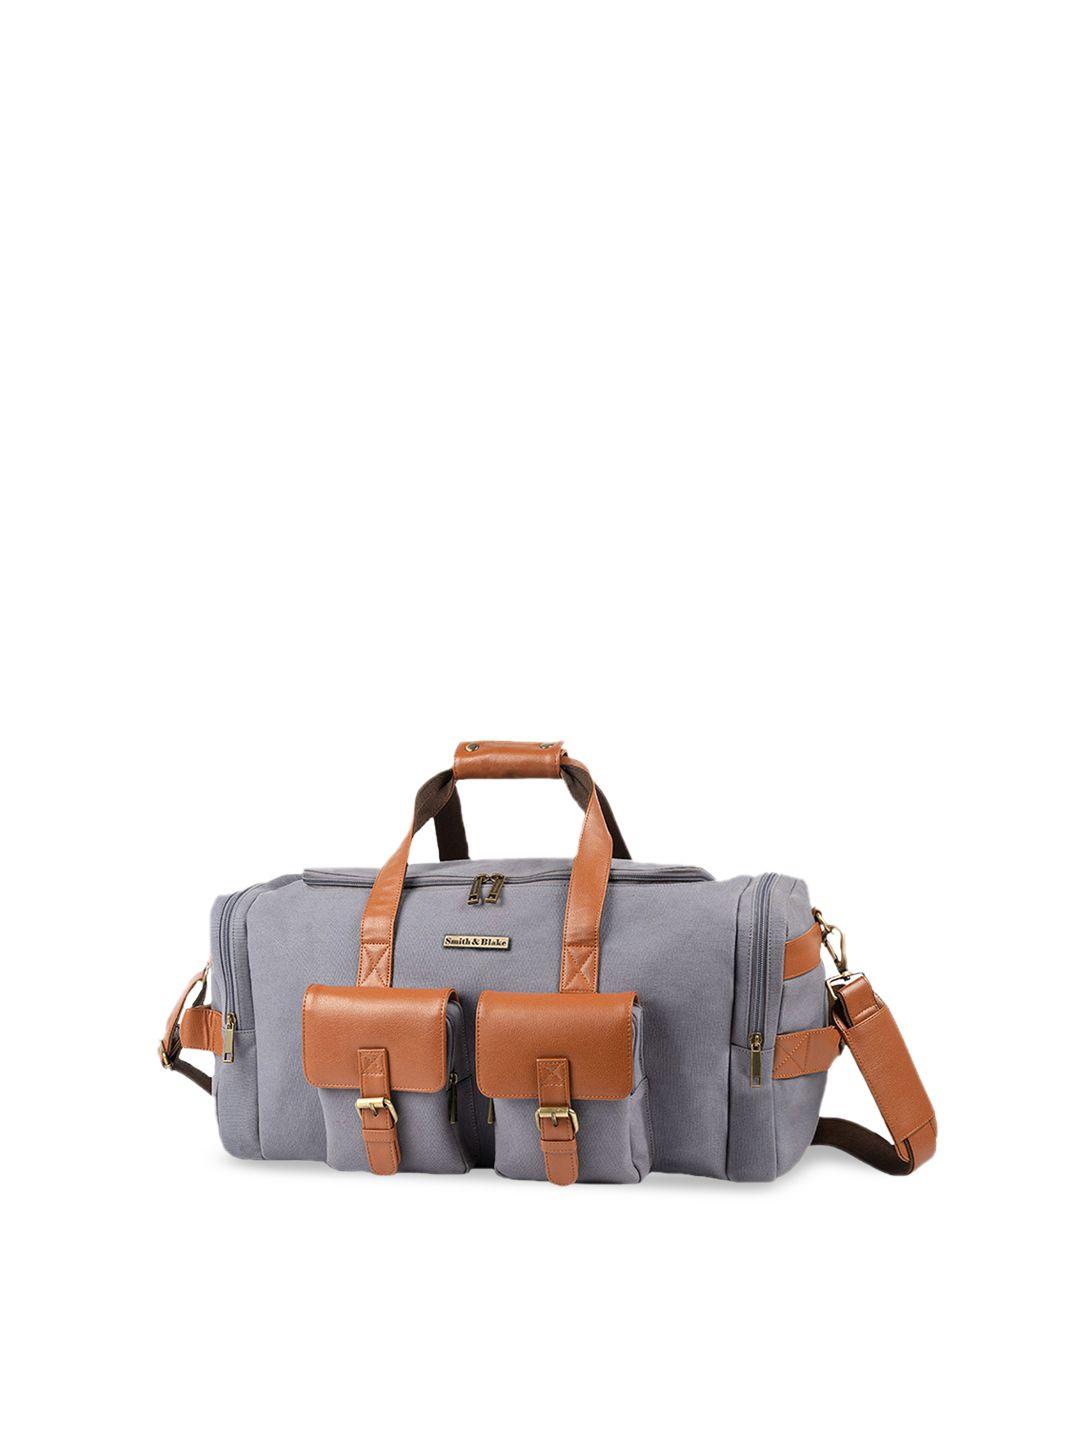 smith & blake grey & tan solid canvas duffel bag